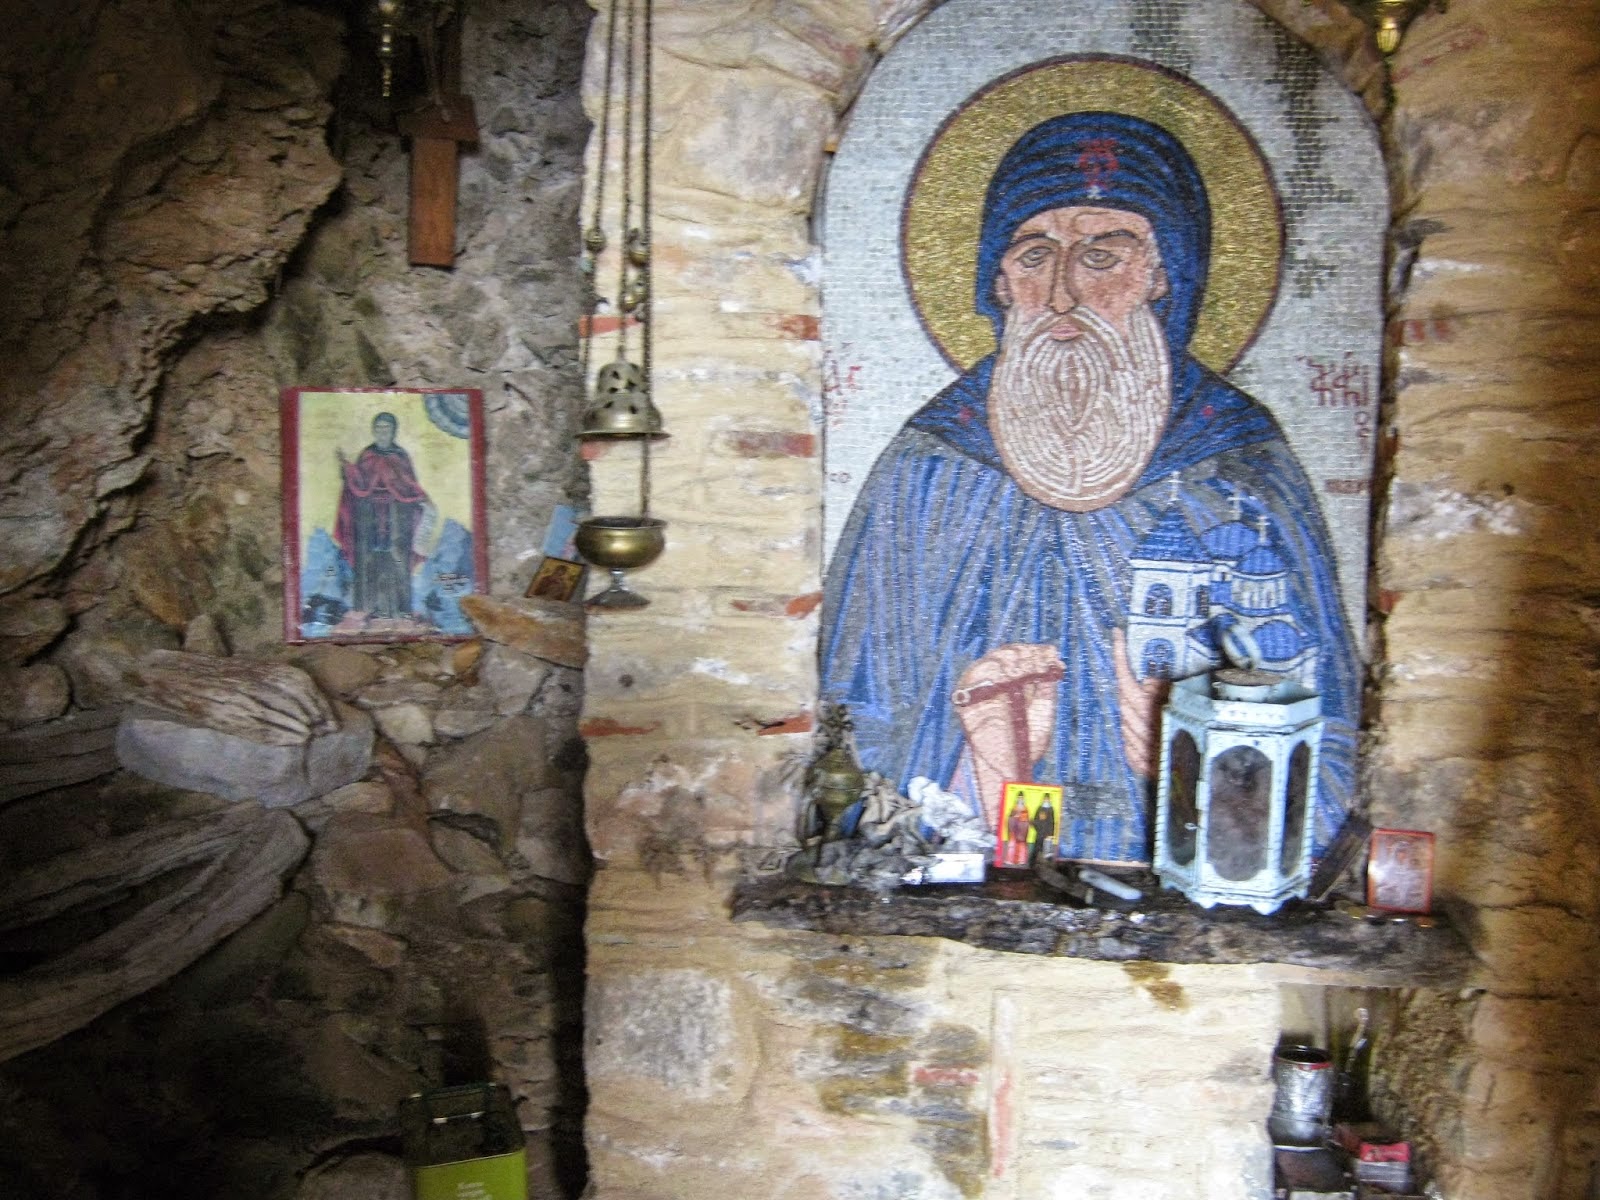 5413 - Φωτογραφίες από το σπήλαιο του Αγίου Ακακίου του Καυσοκαλυβίτη - Φωτογραφία 1